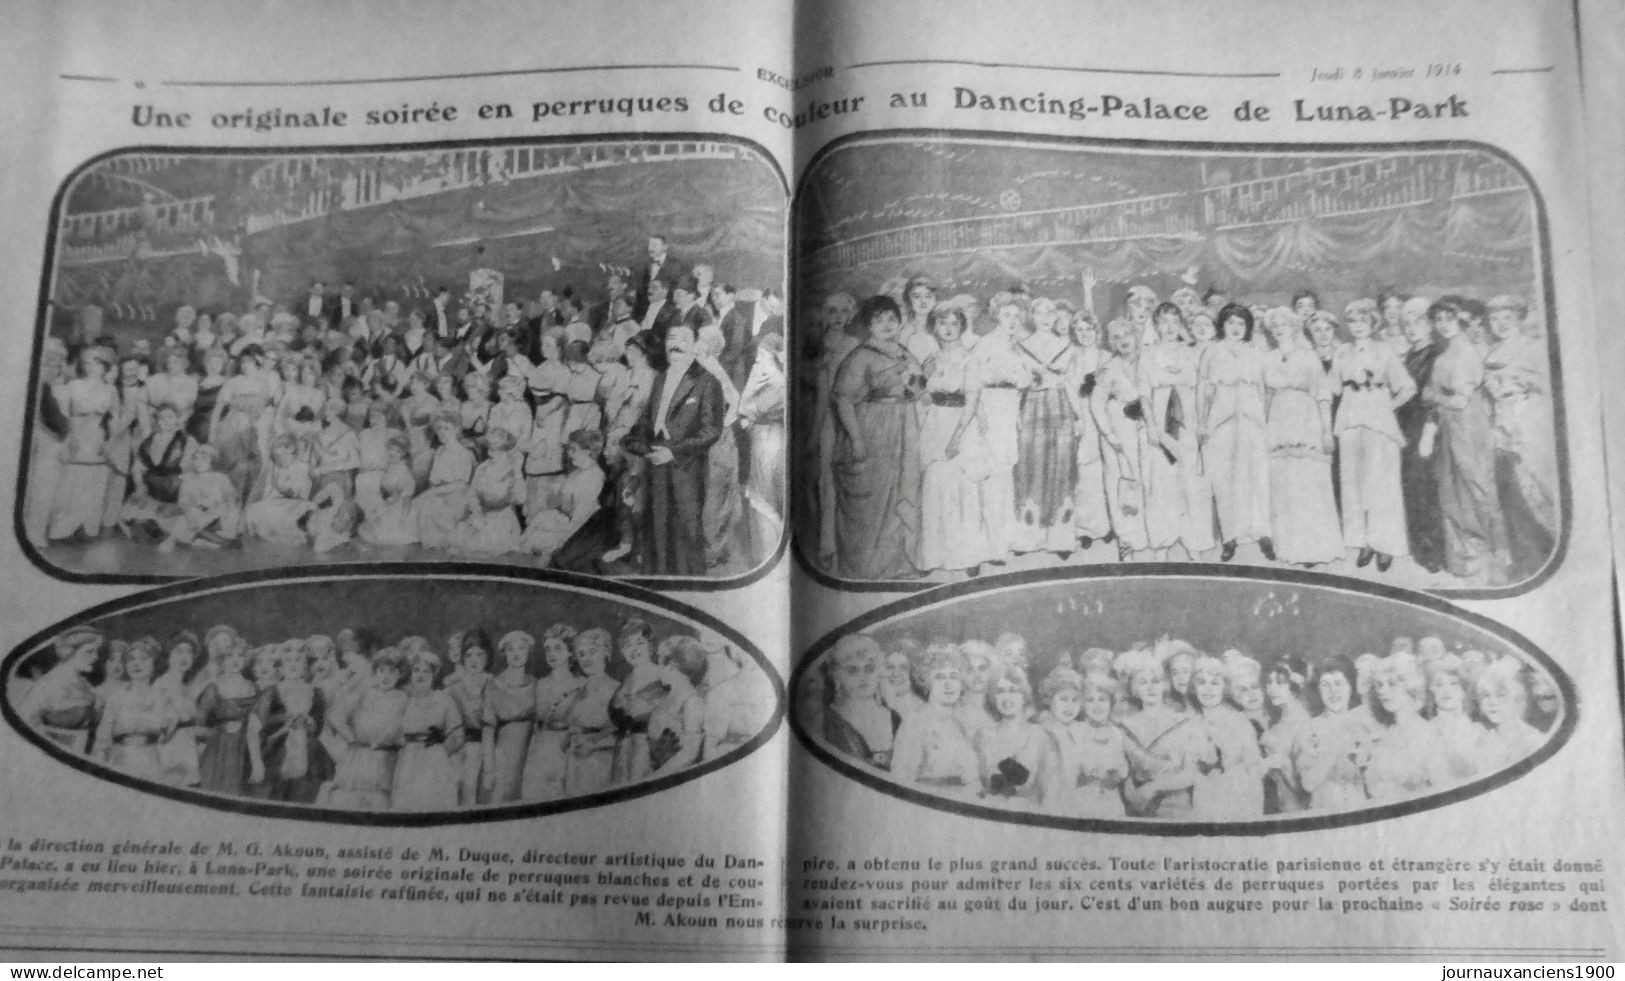 1914 EXCELSIOR ARTICLE DE PRESSE DANCING PALACE AKOUN DUQUE PERRUQUE 1 JOURNAL - Diapositivas De Vidrio